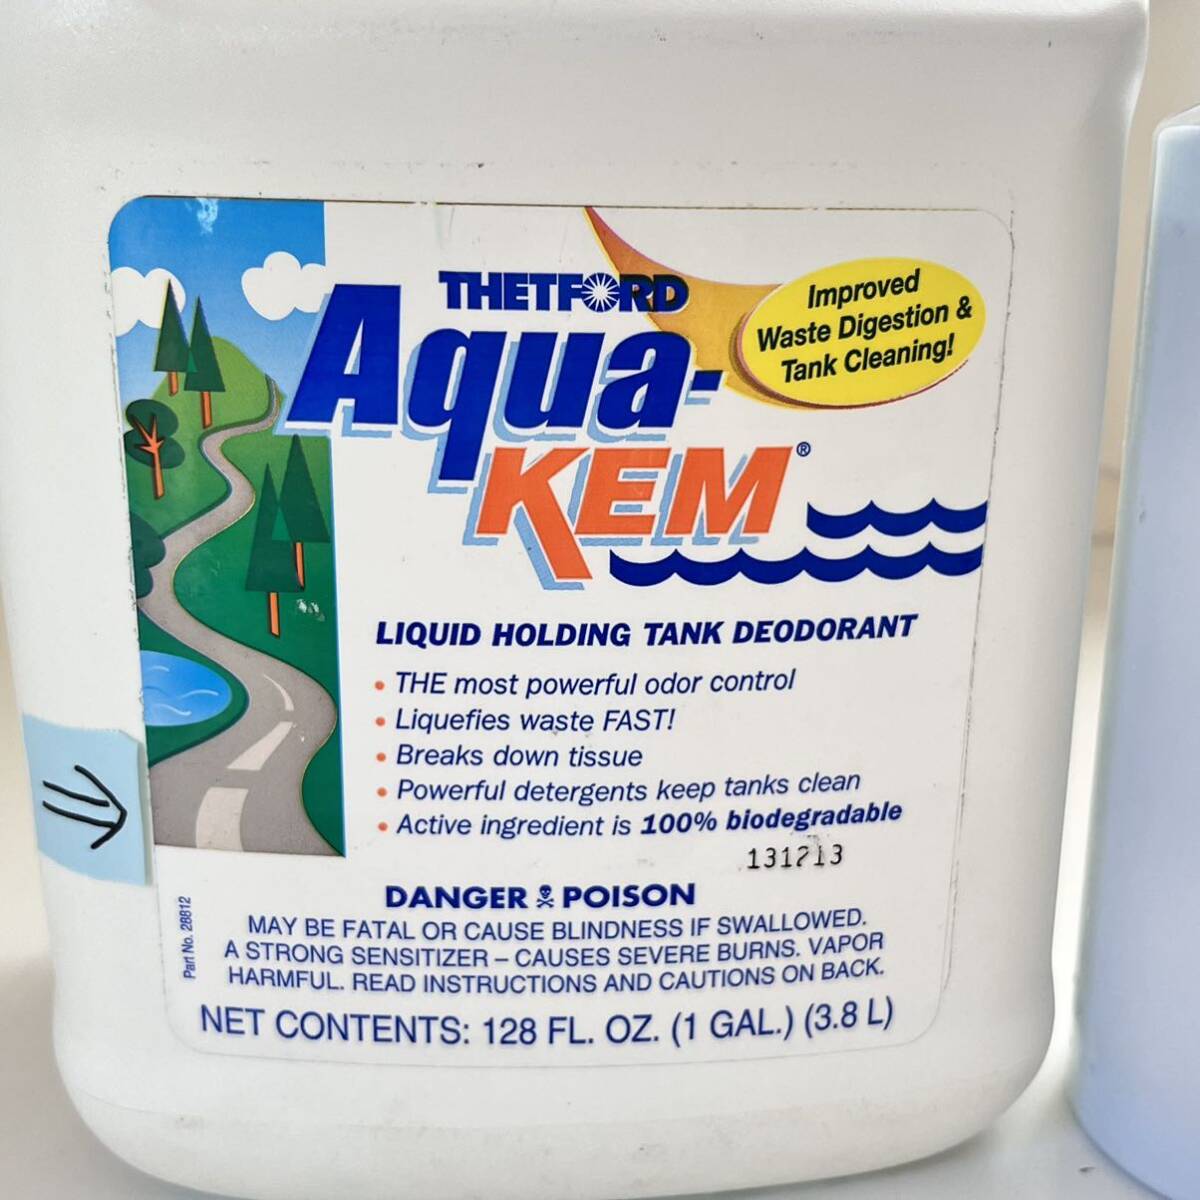  контейнер включая 2.4kg THETFORD комплект Ford туалет бак для дезодорант AquaKEM aqua kem голубой кемпер портативный кассета туалет ..